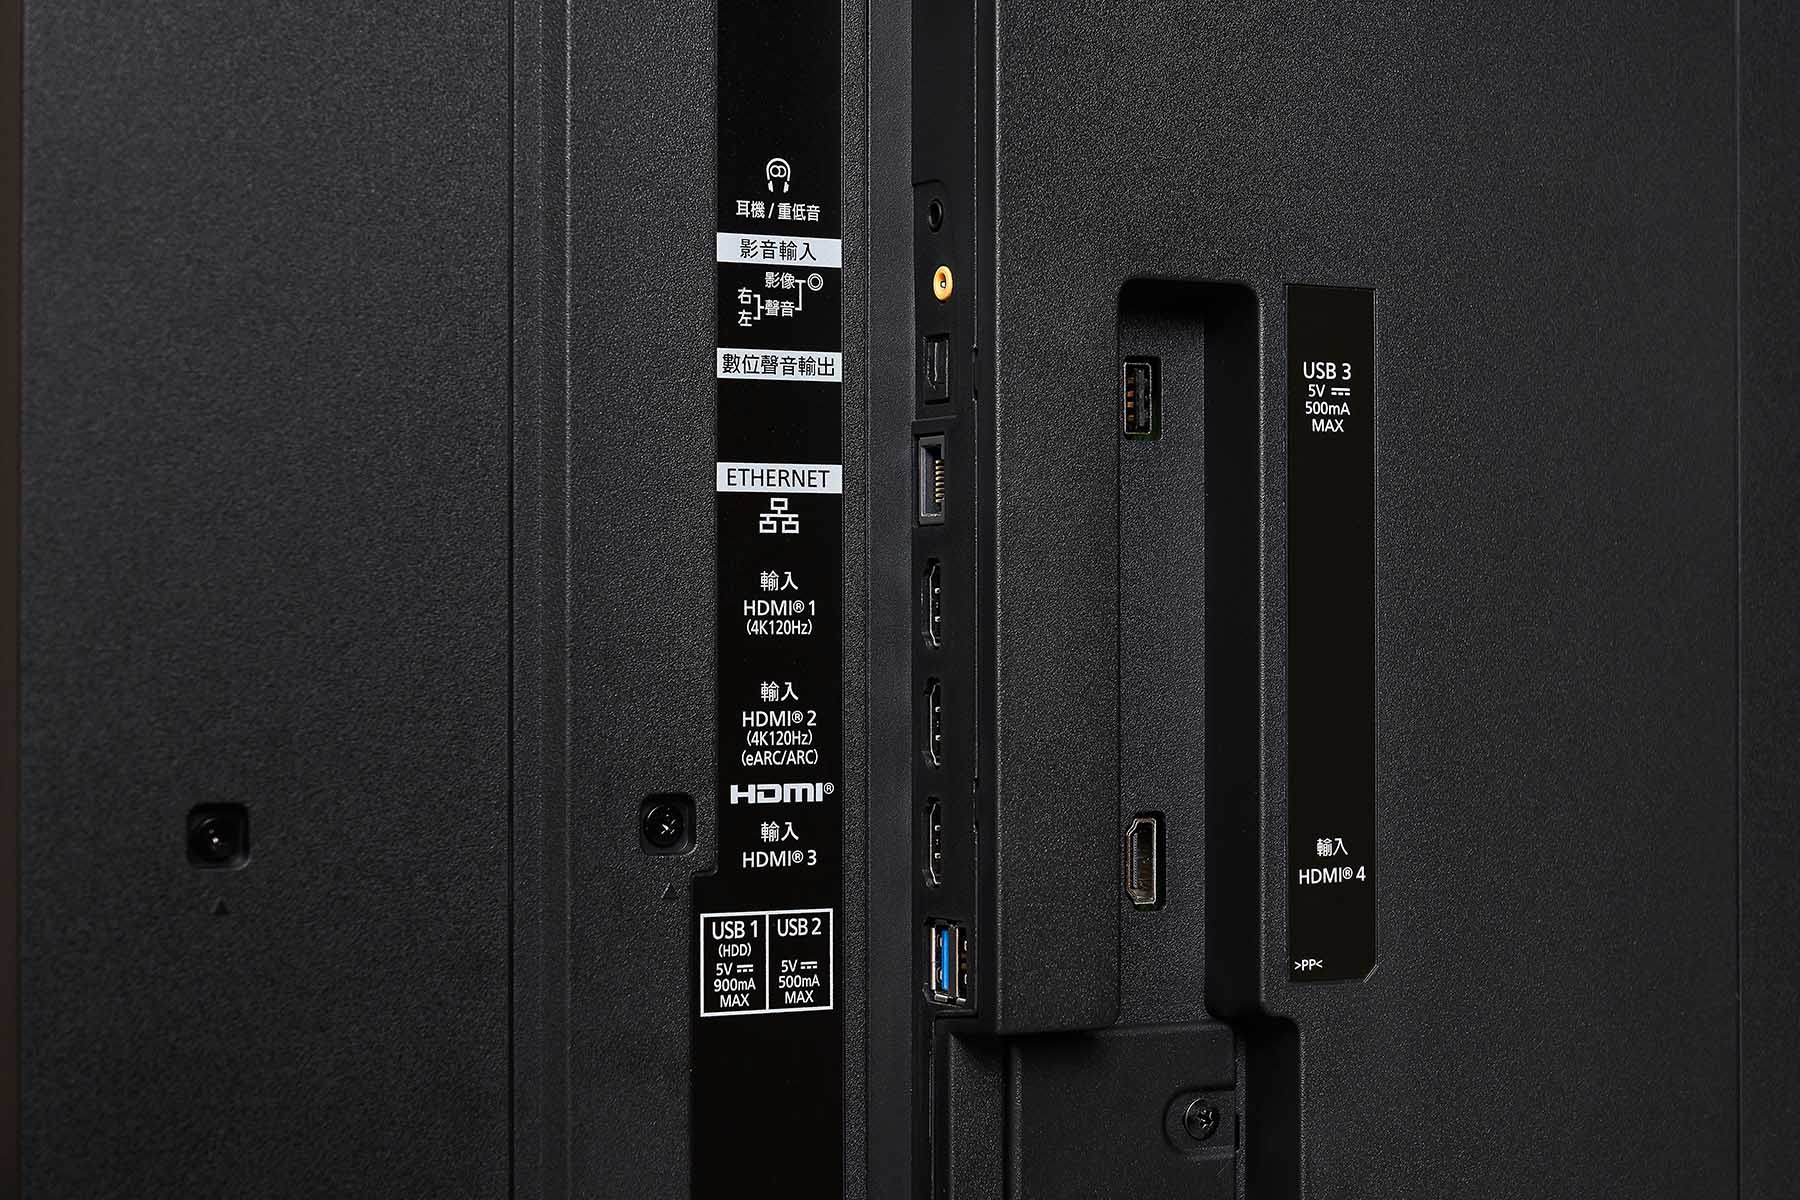 機體背面側邊配置傳輸介面群，可以看到共有四組 HDMI 輸入，其兩組標示支援 4K 120Hz 訊號，能對應次世代遊戲主機的最高視訊格式顯示，而其他傳輸介面則包含三組 USB 端、耳機輸出端、A/V 影音輸入端，LAN 有線網路端以及光纖音訊輸出端。